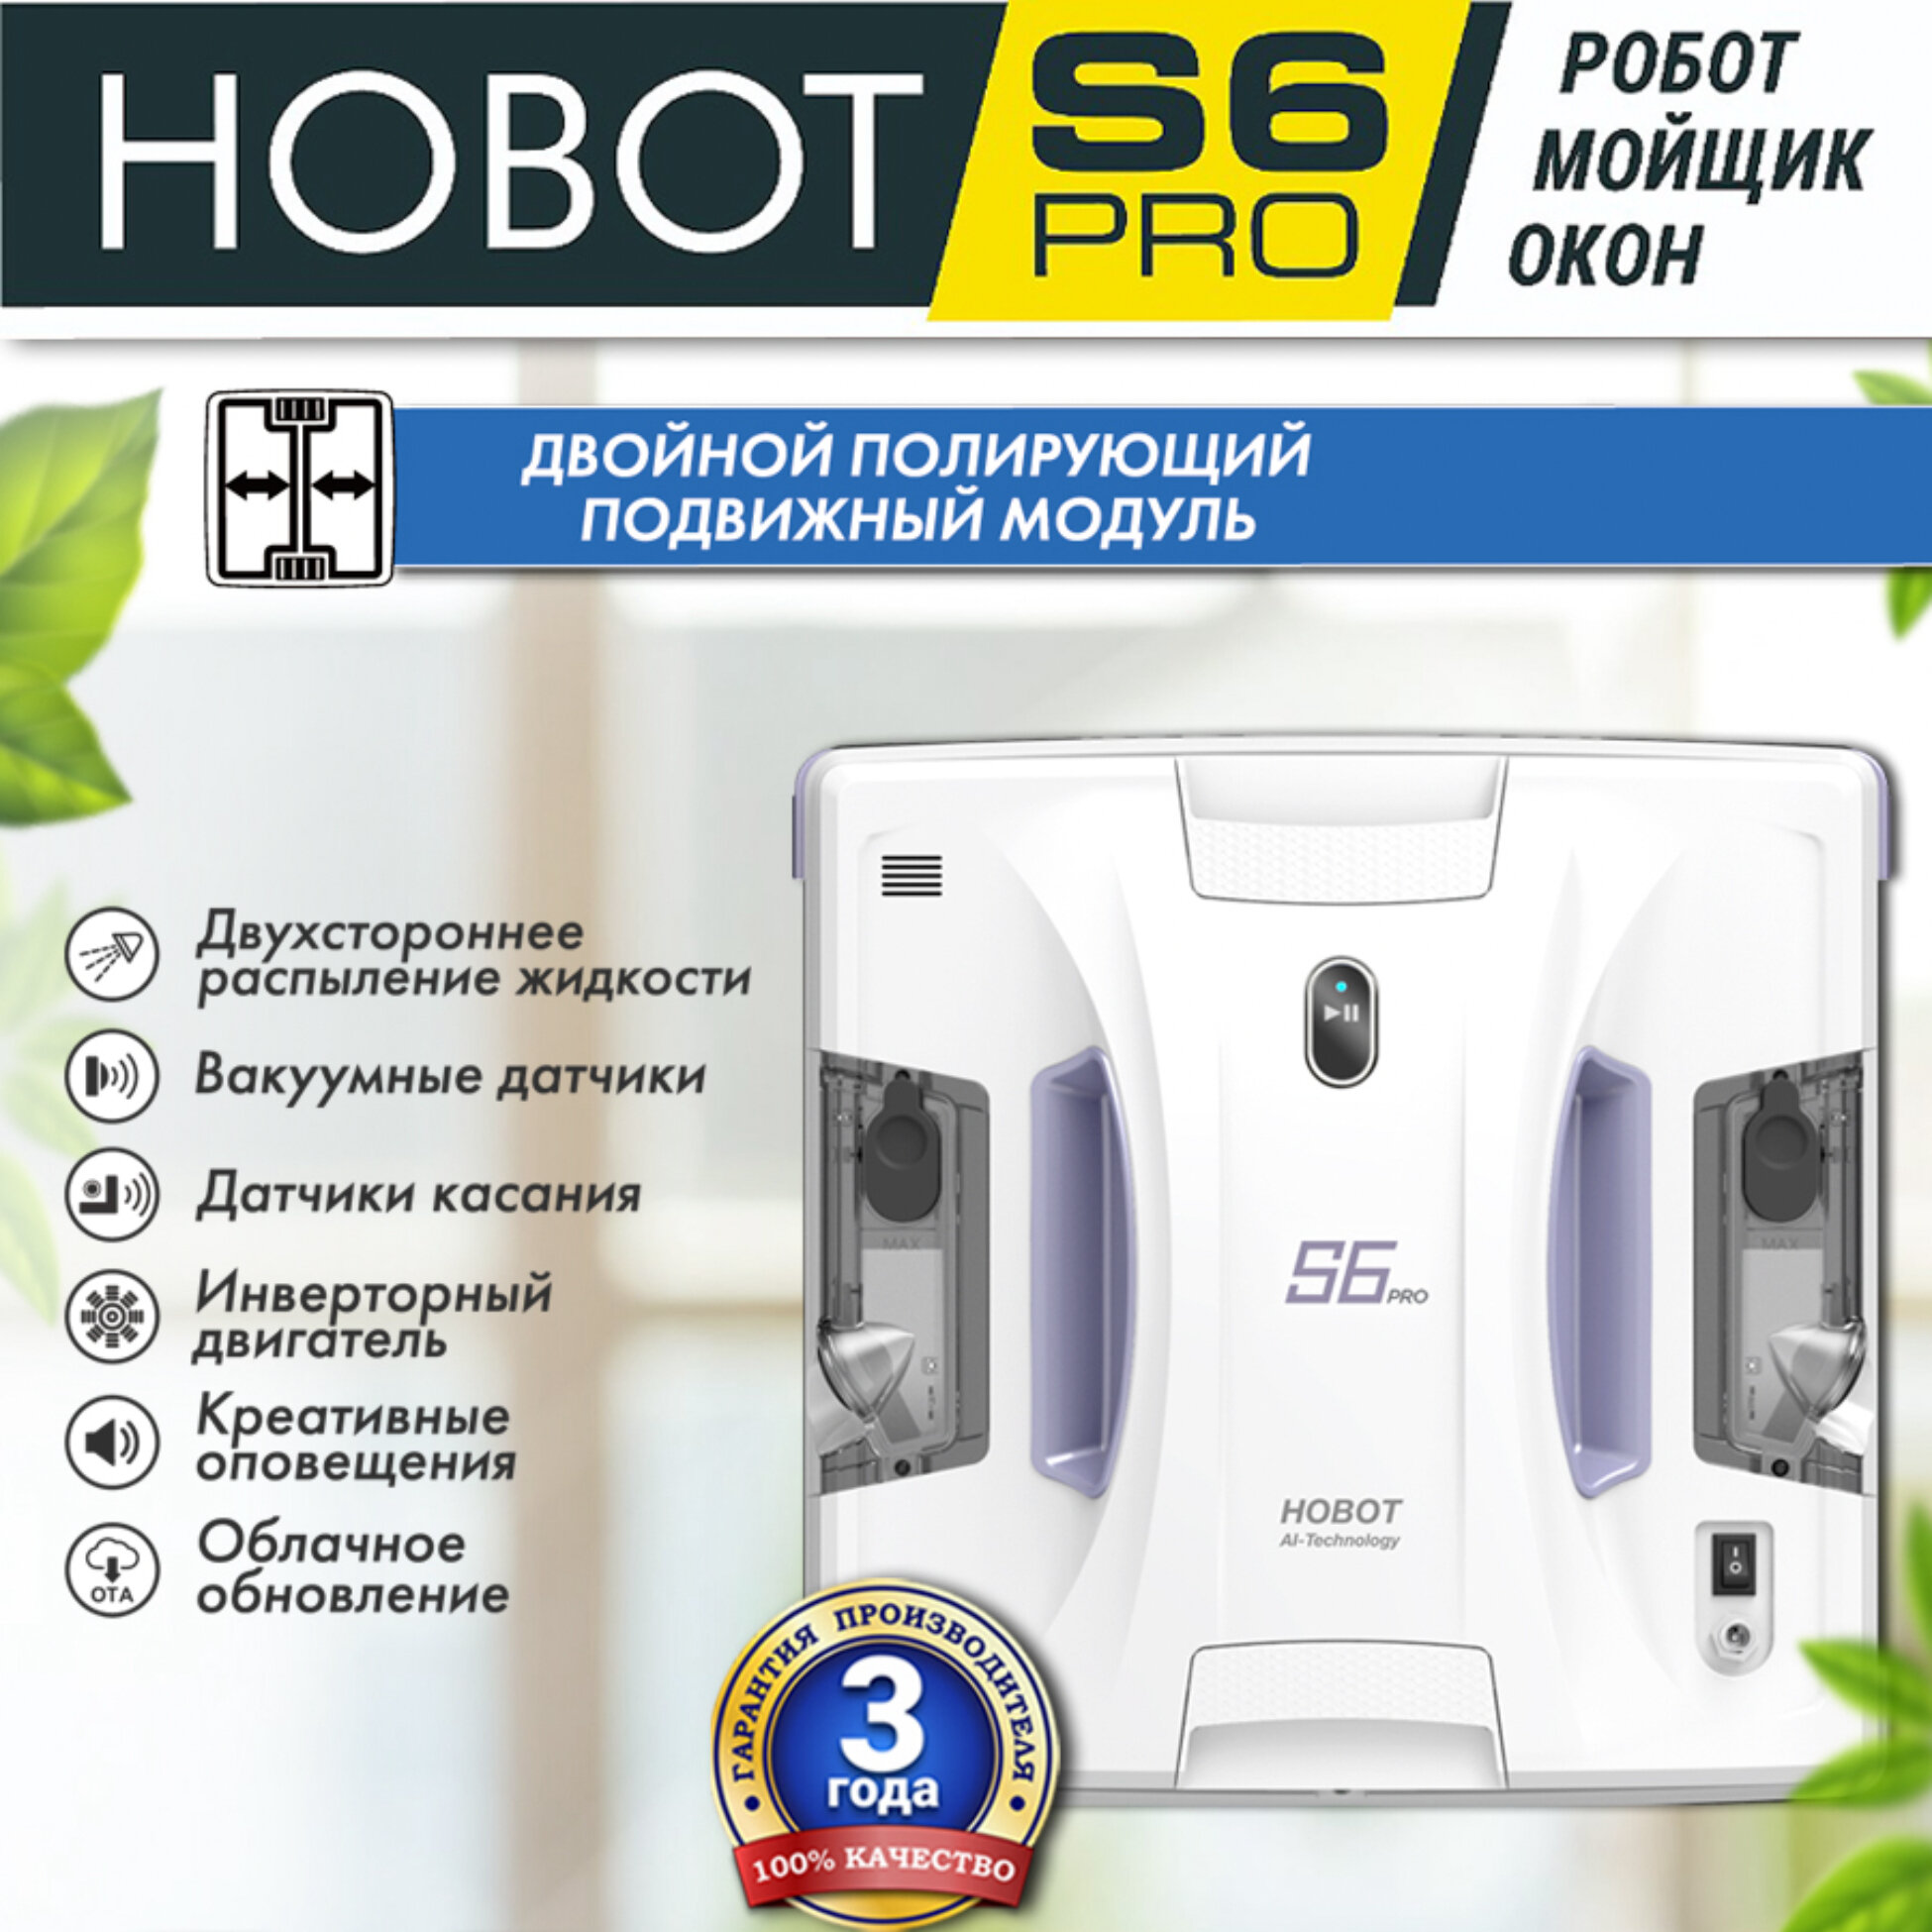 Робот-мойщик окон Hobot S6 Pro